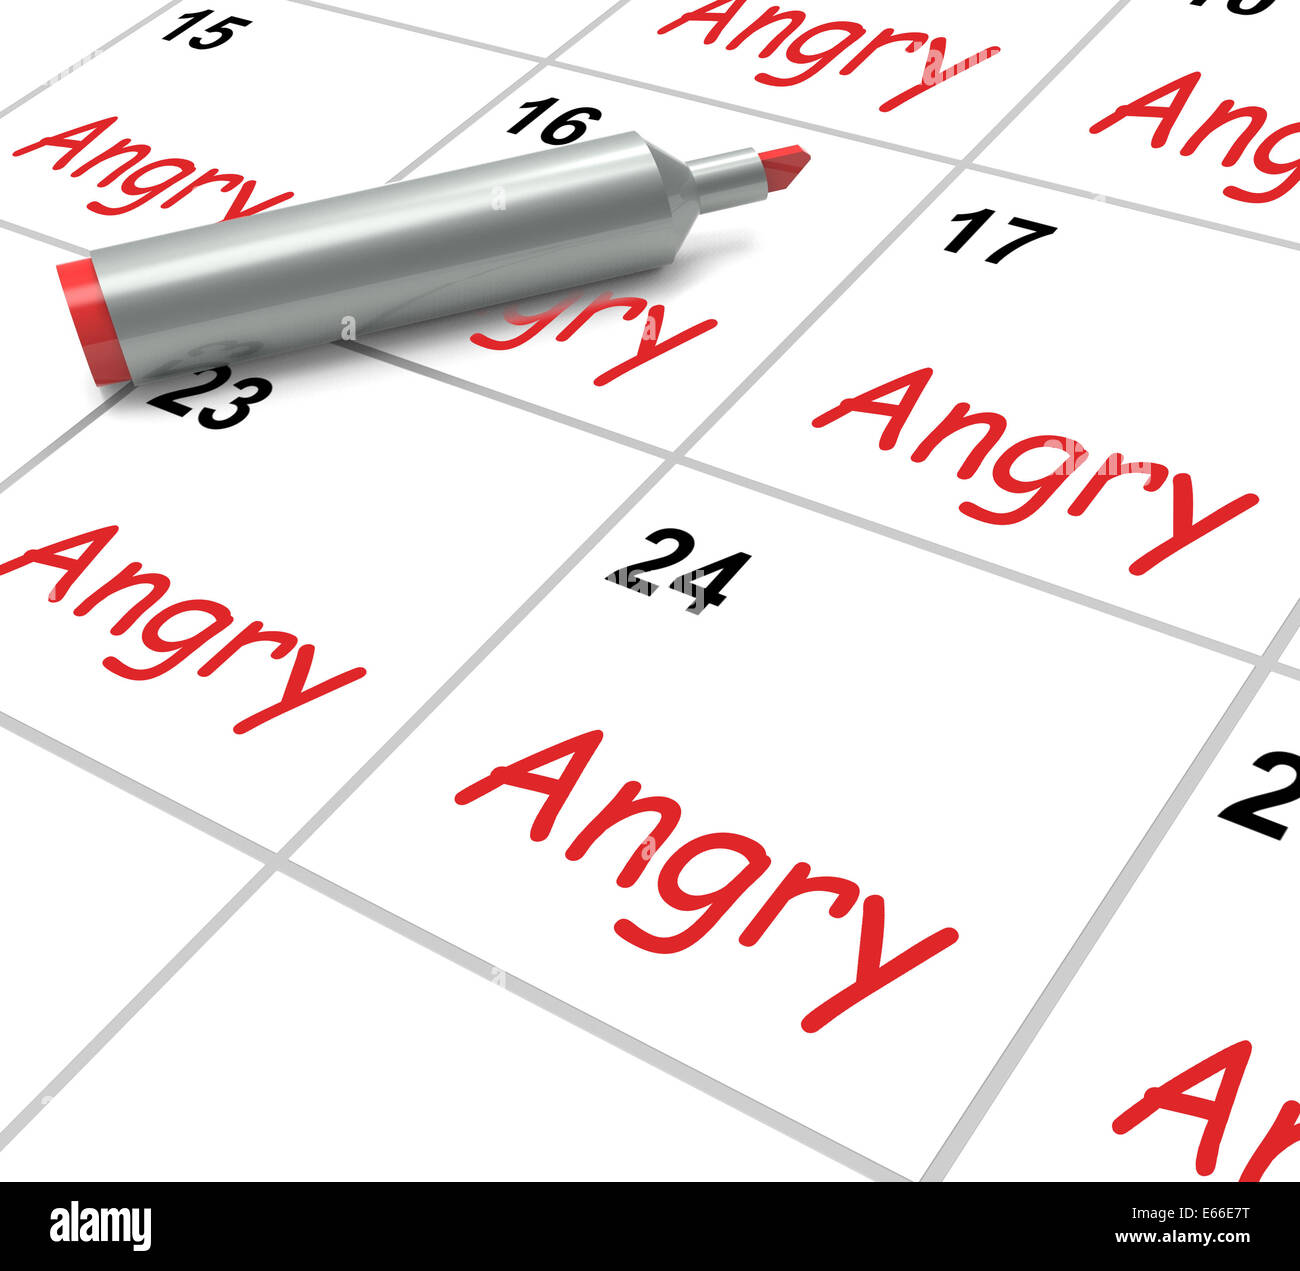 Calendario enojado significado furia rabia y rencor Foto de stock